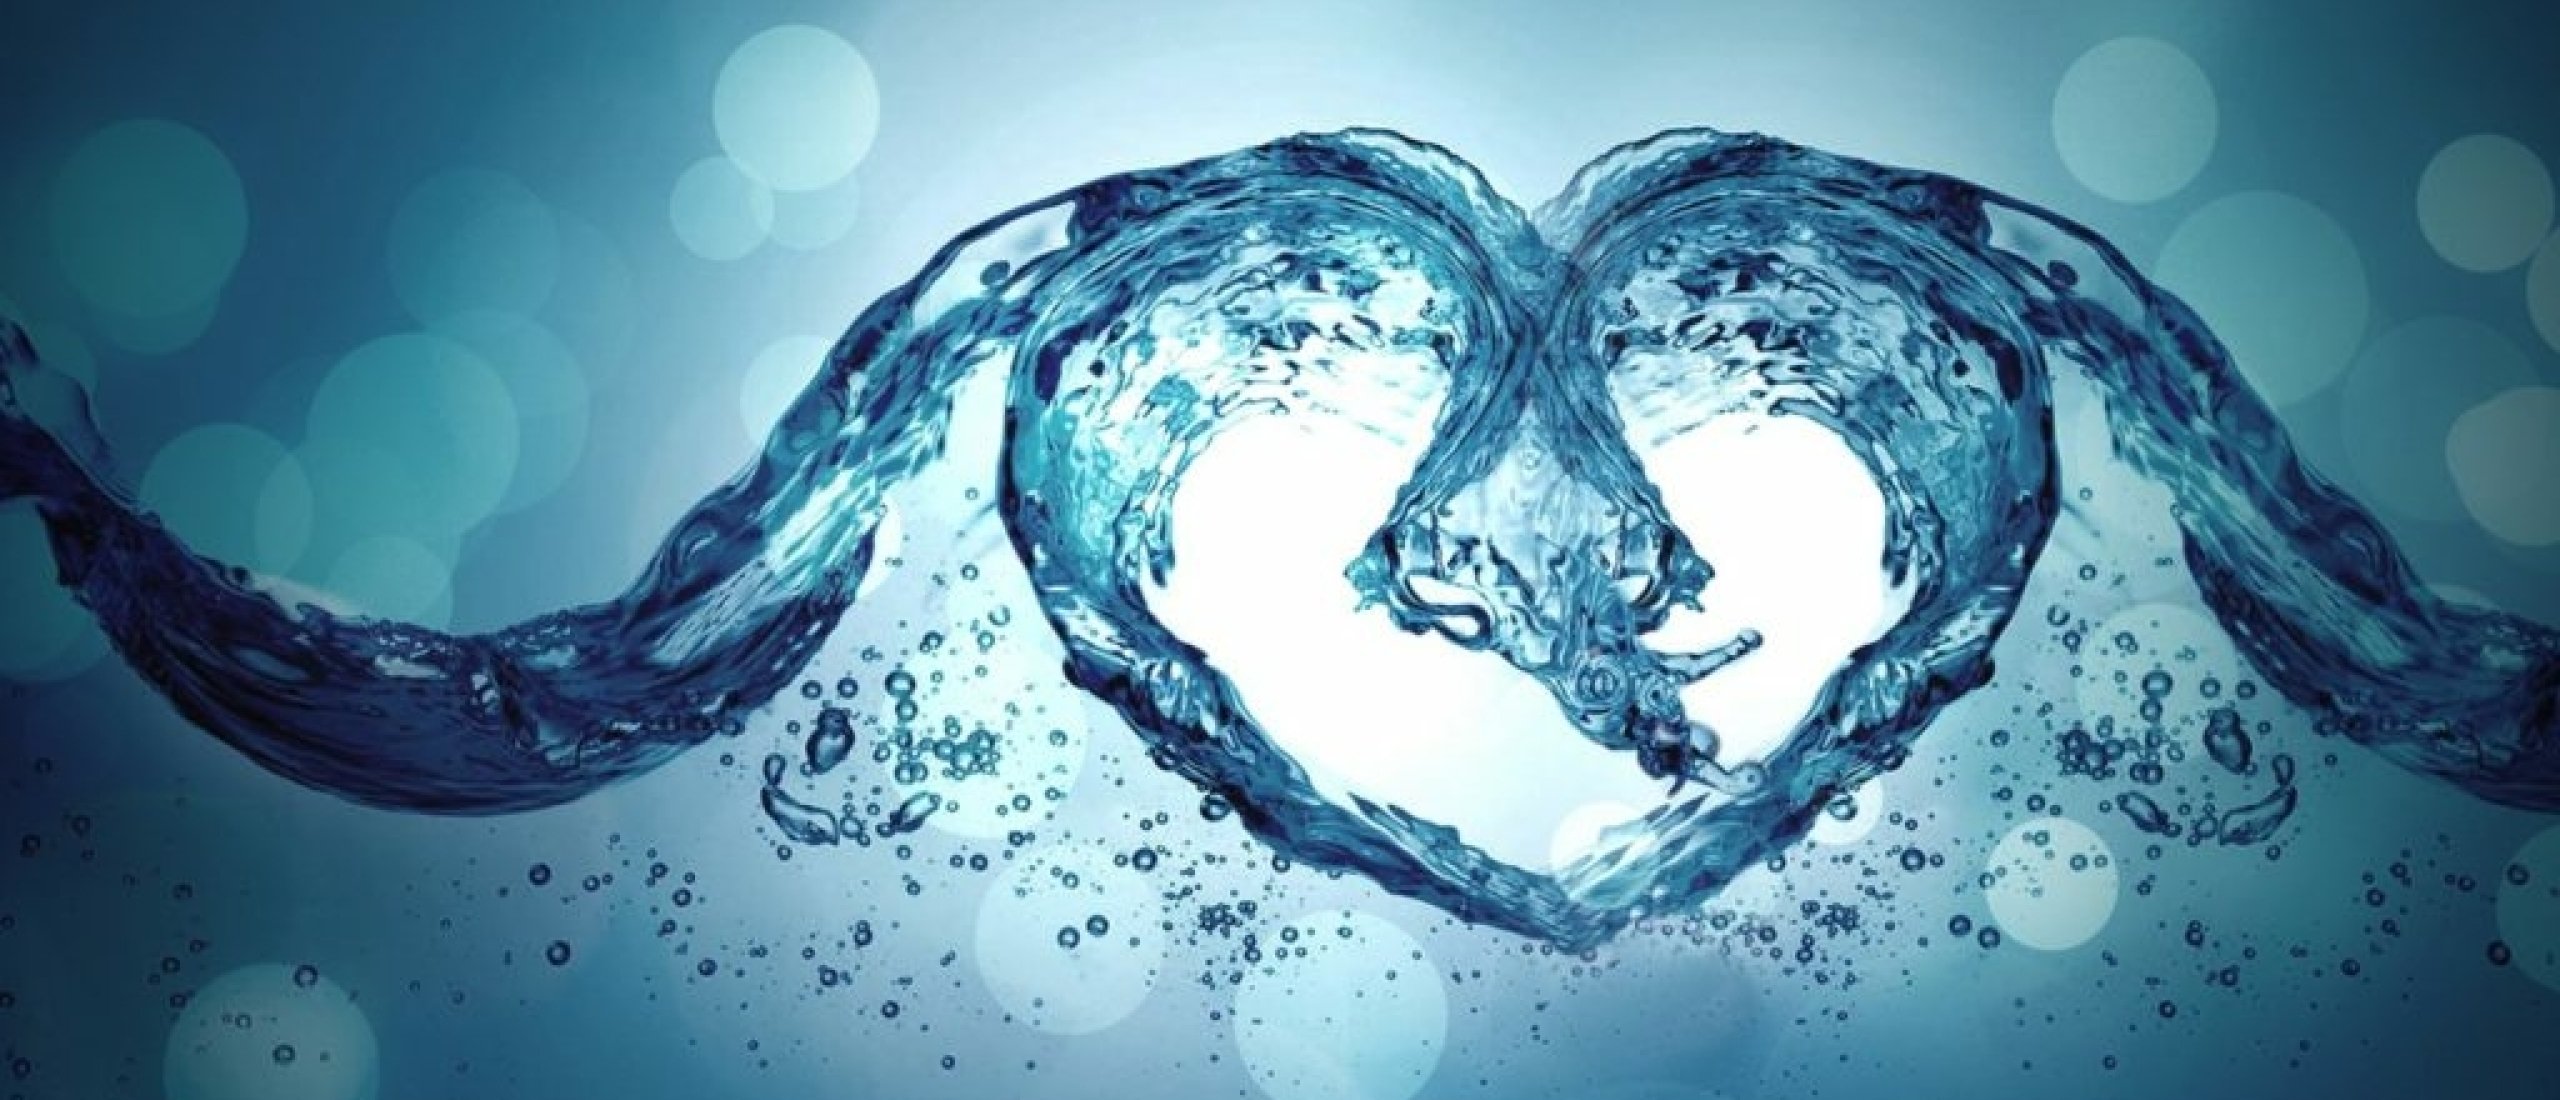 Water is Liefde